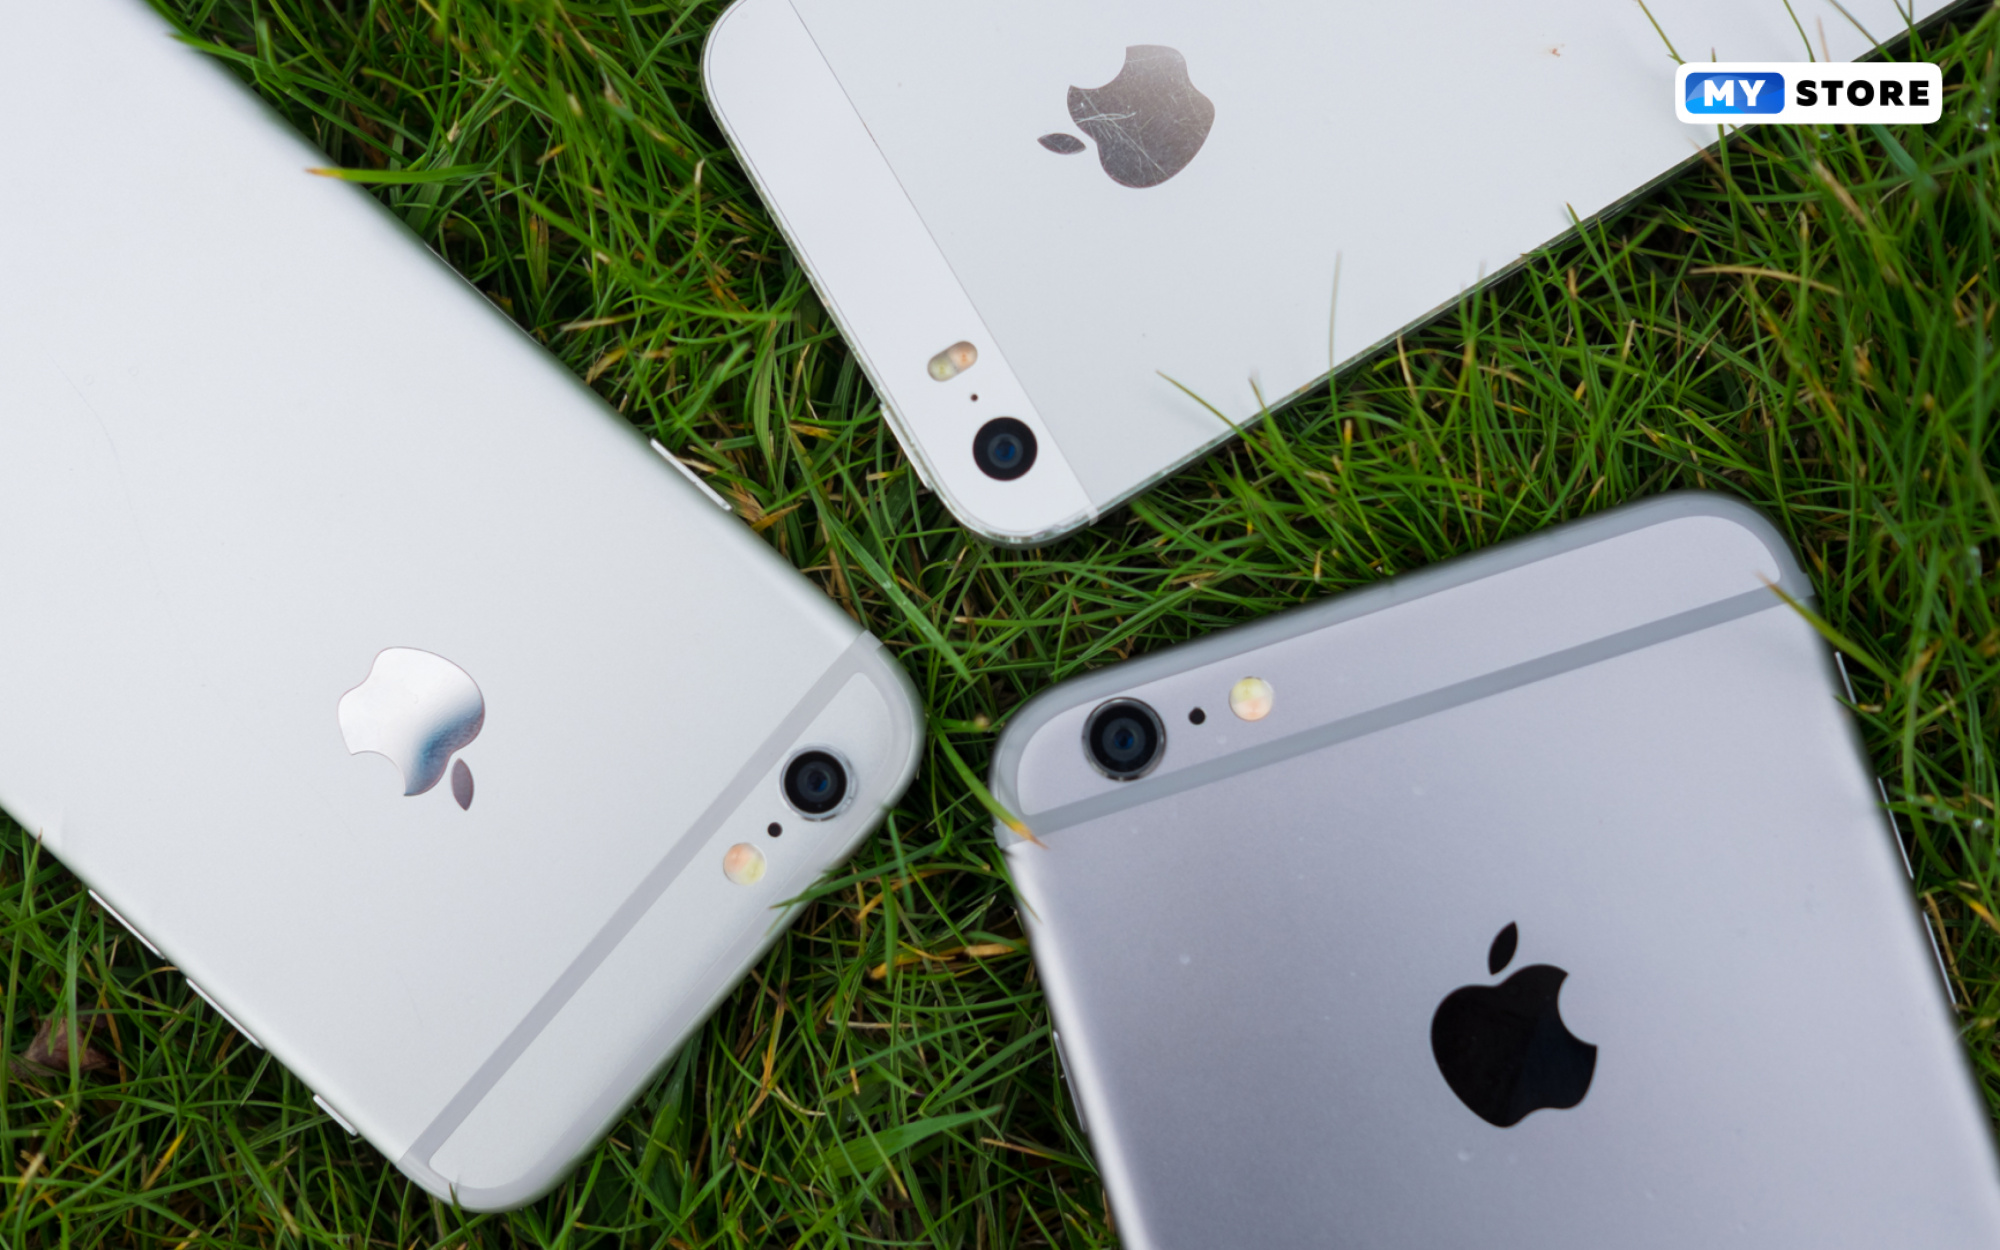  3 настройки iOS, которые сэкономят заряд аккумулятора iPhone